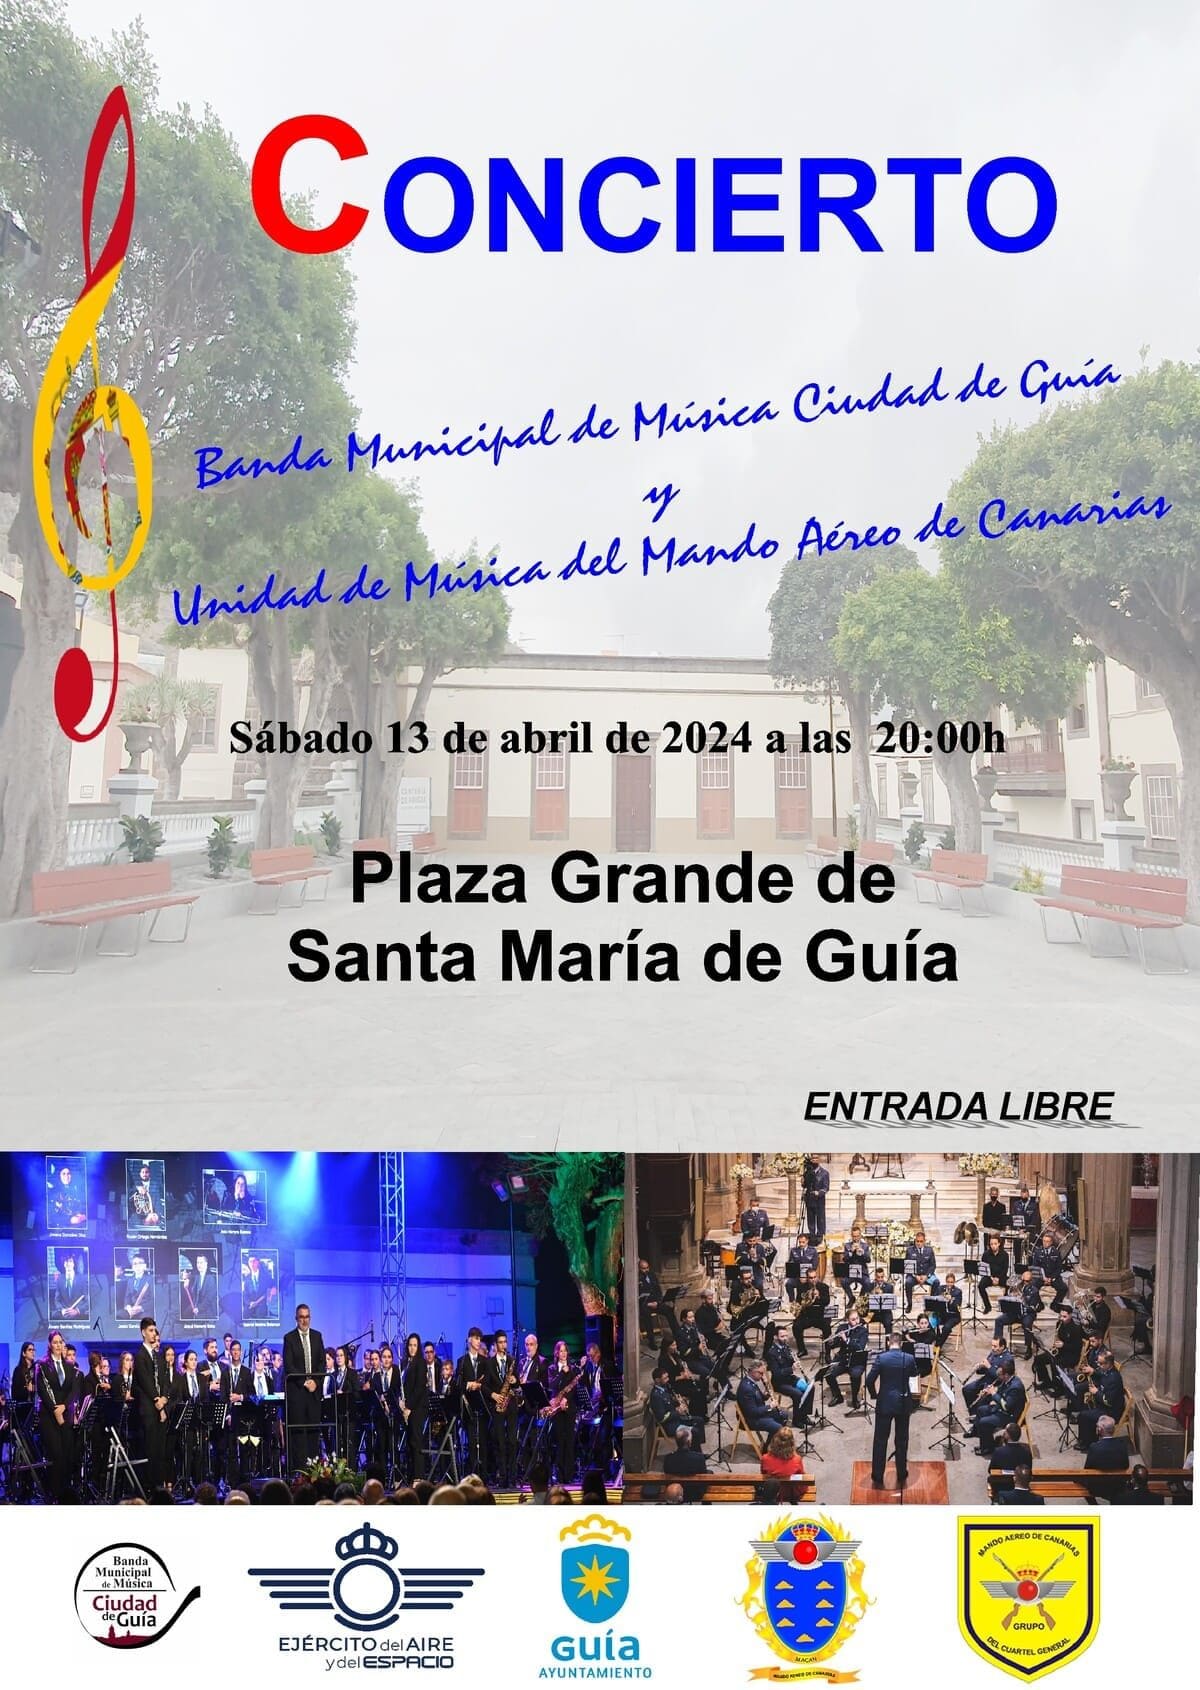 La Unidad de Música del Mando Aéreo de Canarias y la Banda de Música Ciudad de Guía ofrecerán un concierto este sábado, previo a la Jura de Bandera civil de este domingo